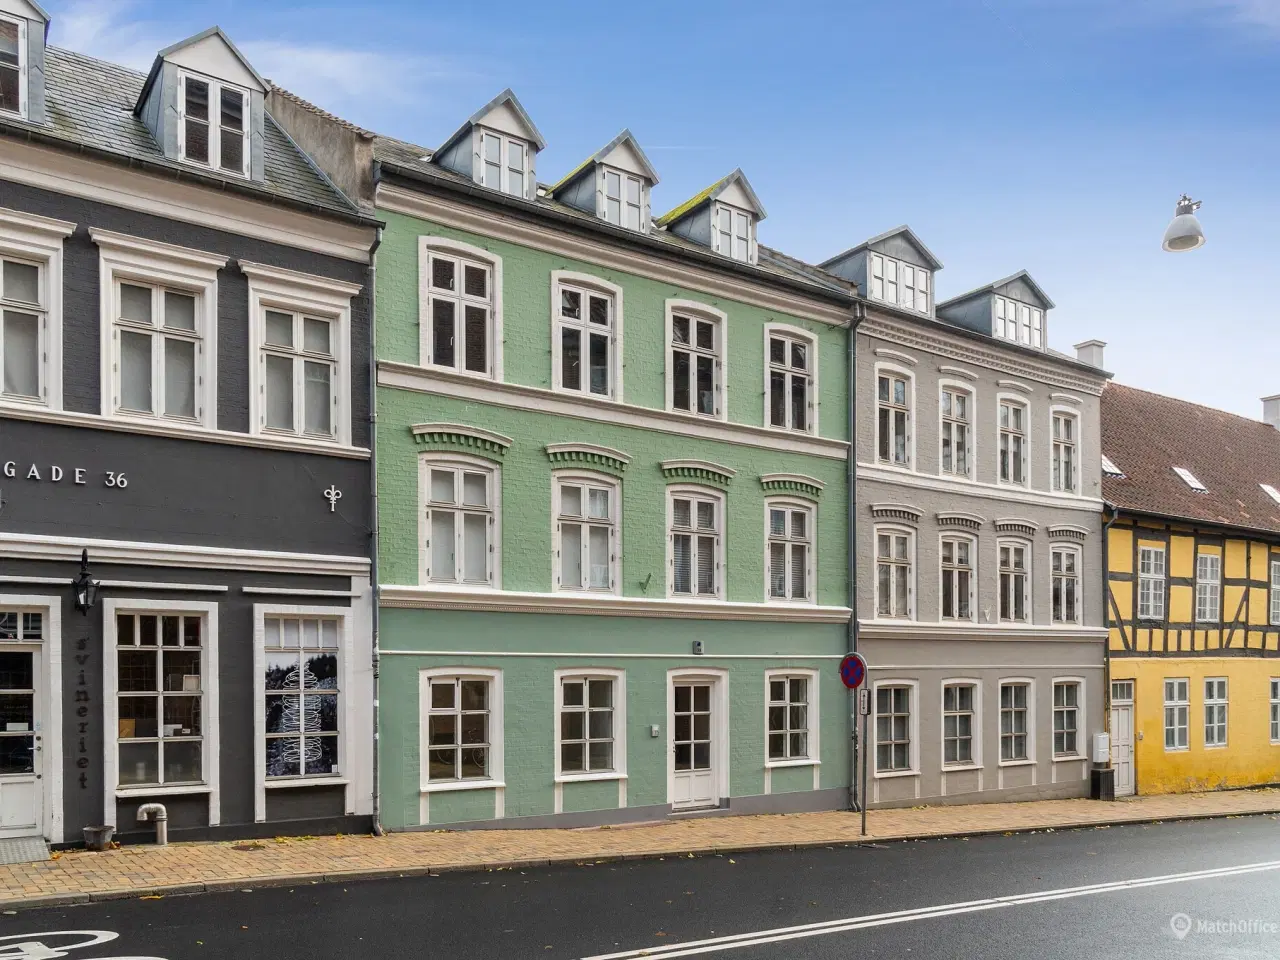 Billede 1 - Nyistandsat kontor/klinik- eller butikslokale på attraktiv gade i Odense midtby udlejes